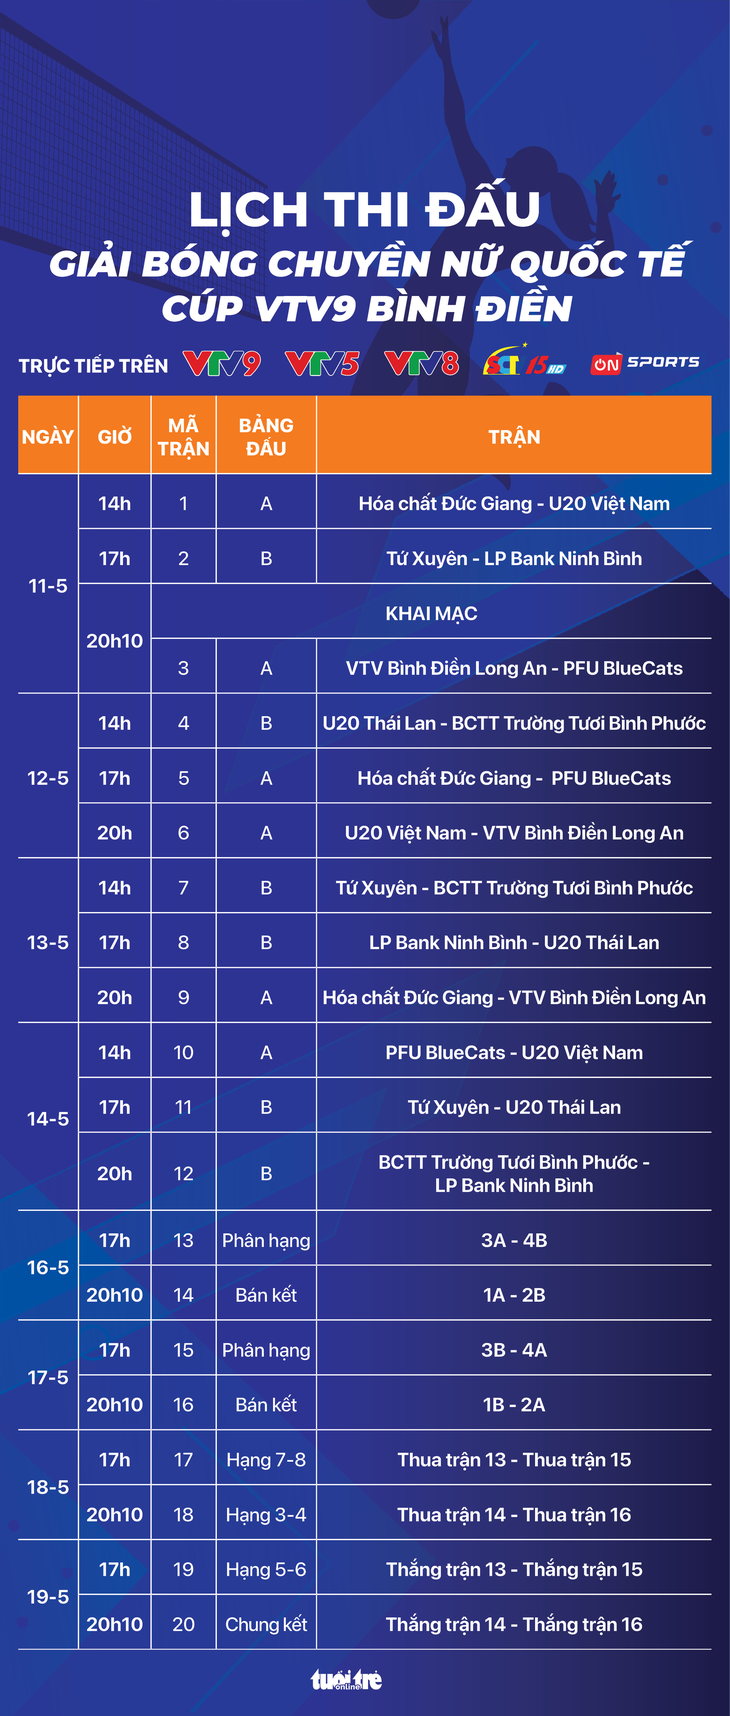 Lịch thi đấu Giải bóng chuyền nữ quốc tế Cúp VTV9 – Bình Điền